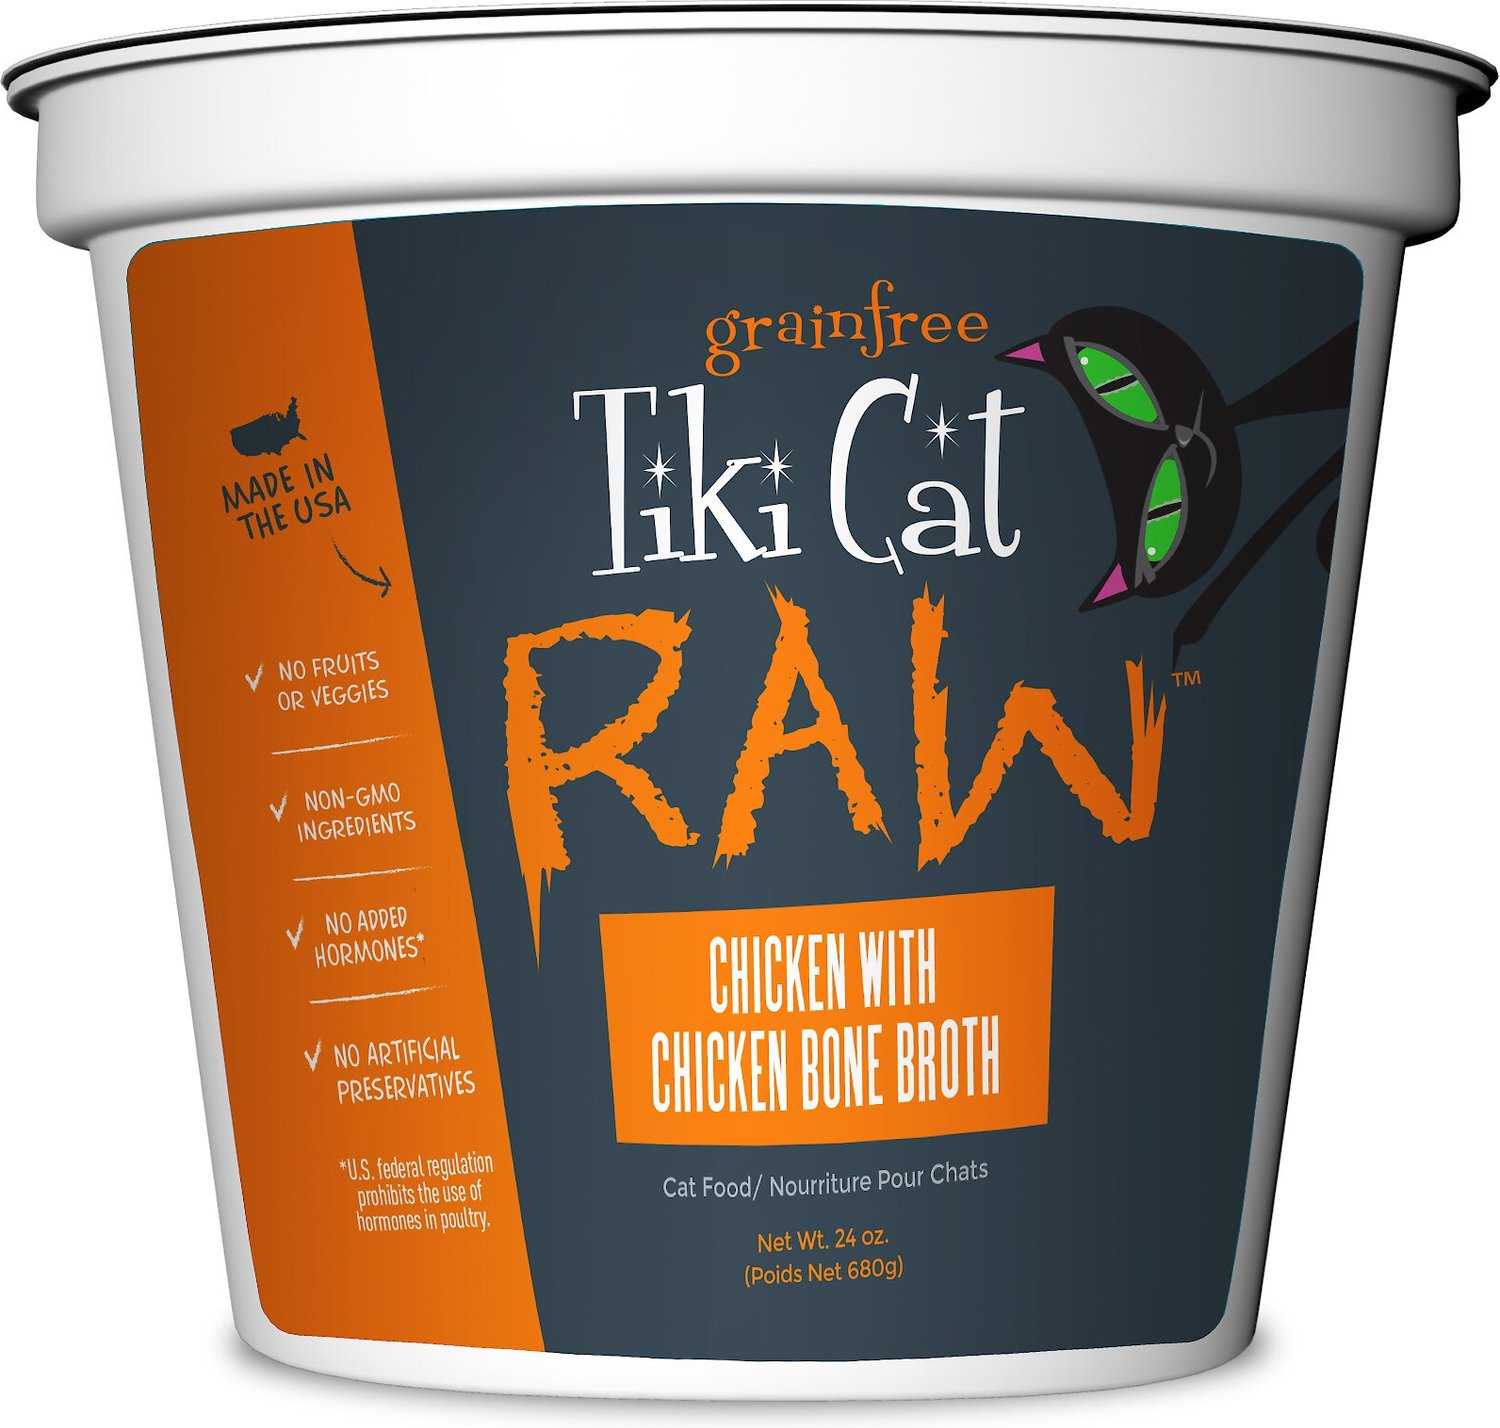 TIKI CAT Raw Chicken with Chicken Bone Broth GrainFree Puree Frozen